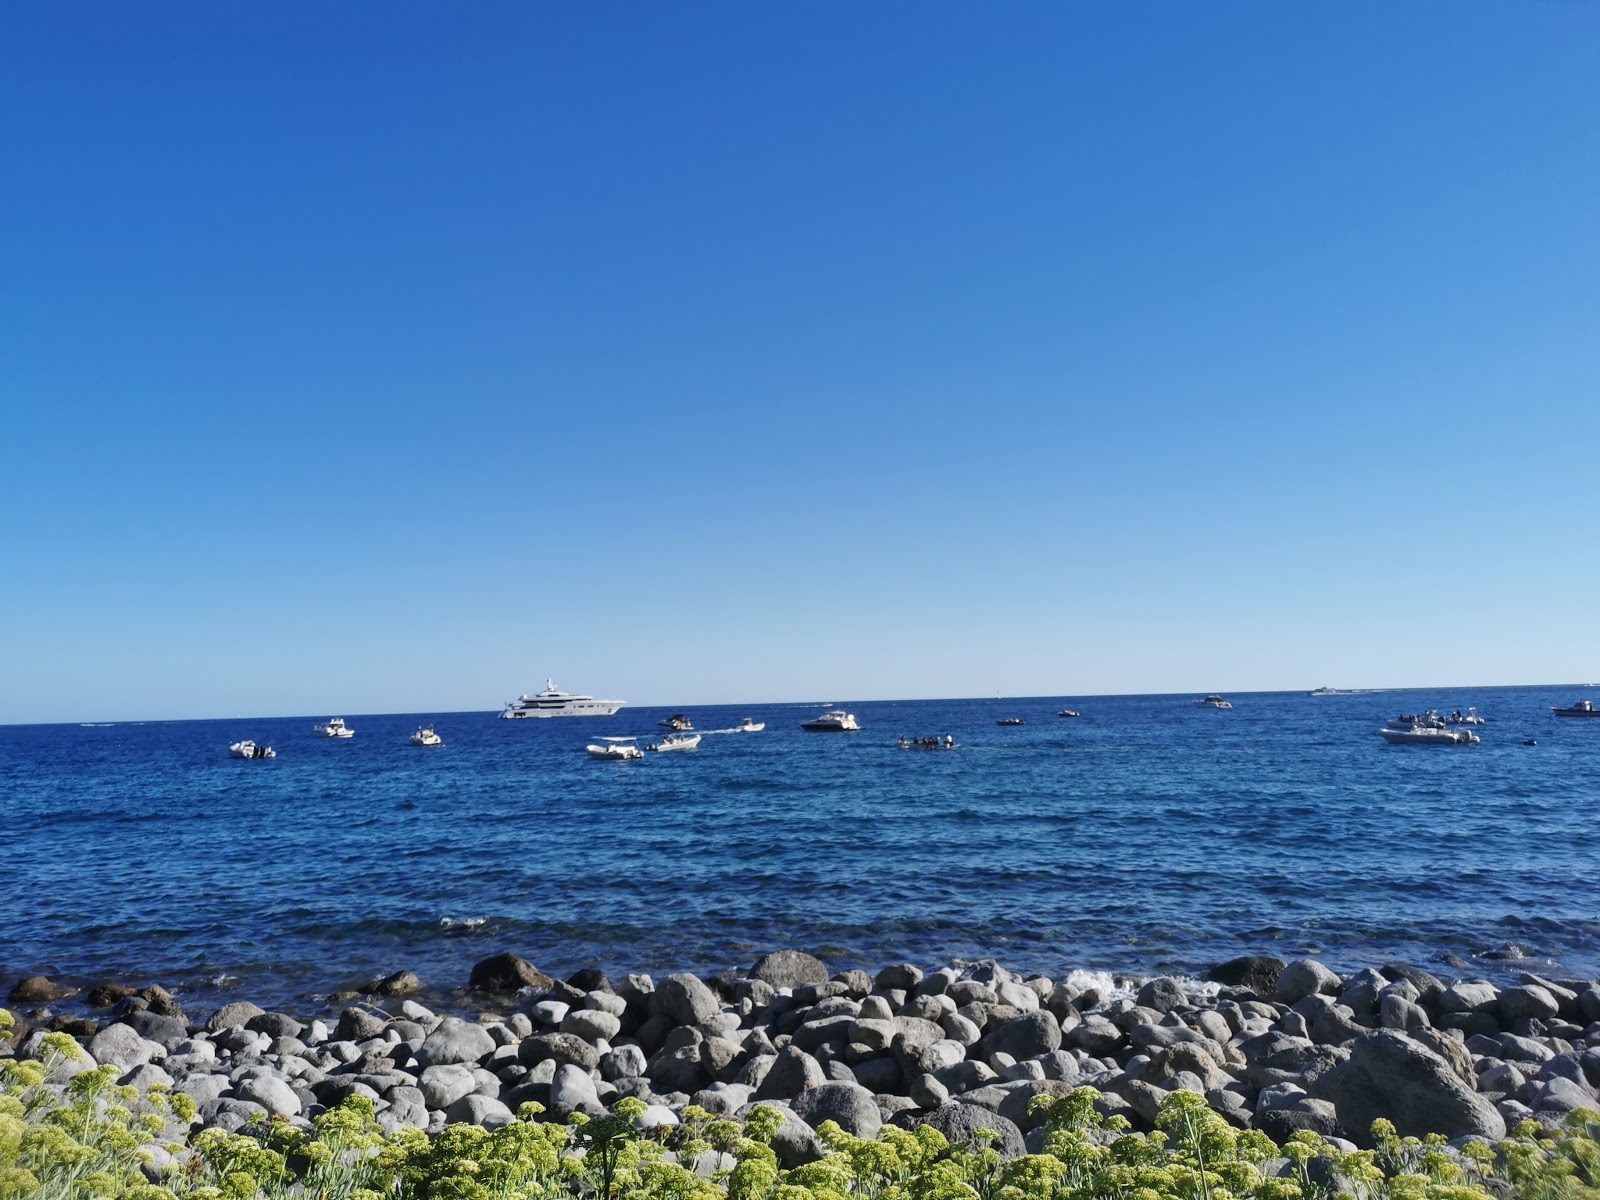 Foto de Spiaggia Scarrupata ubicado en área natural